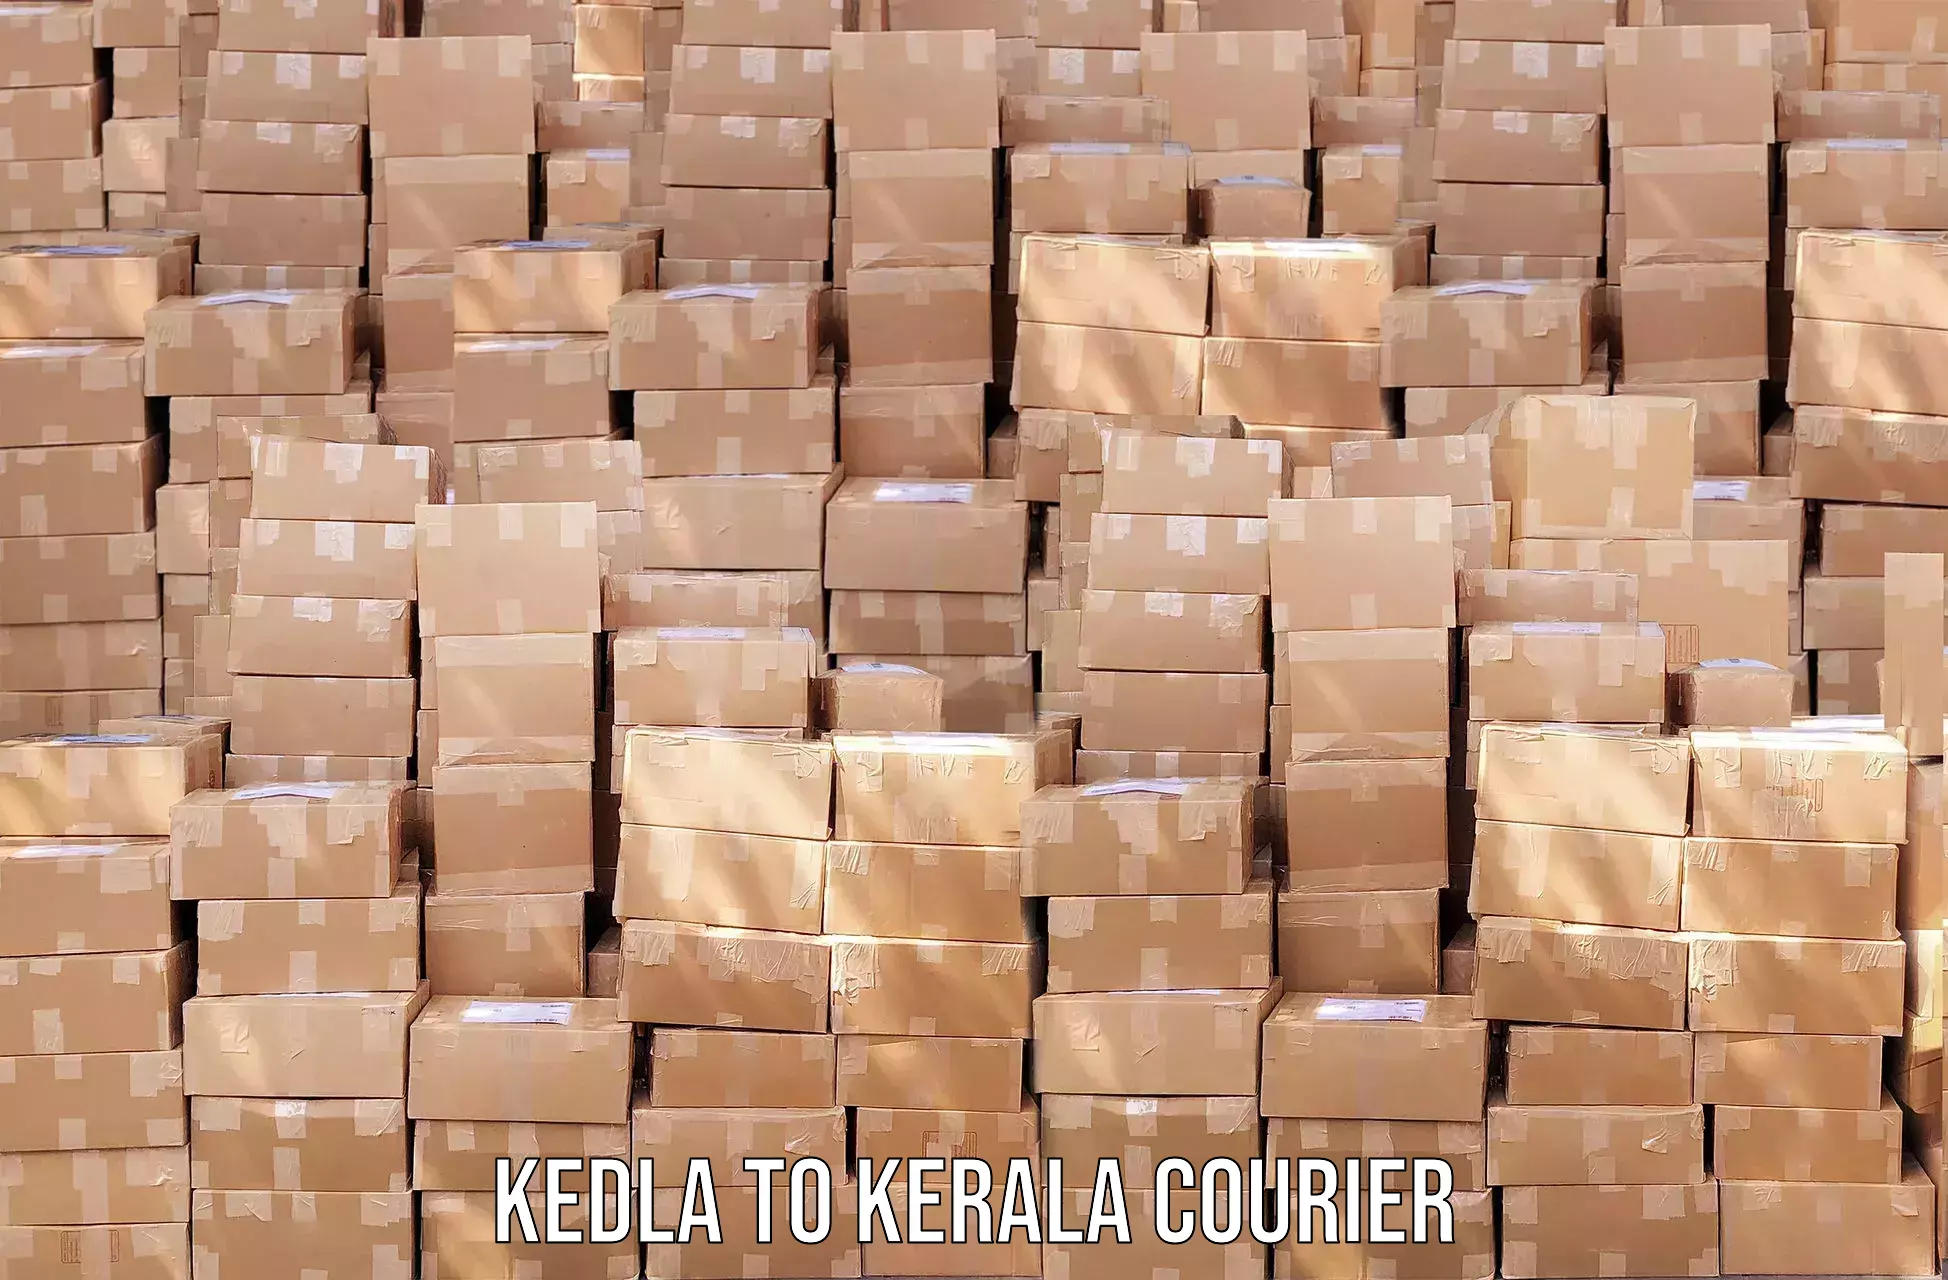 Streamlined logistics management Kedla to Kerala